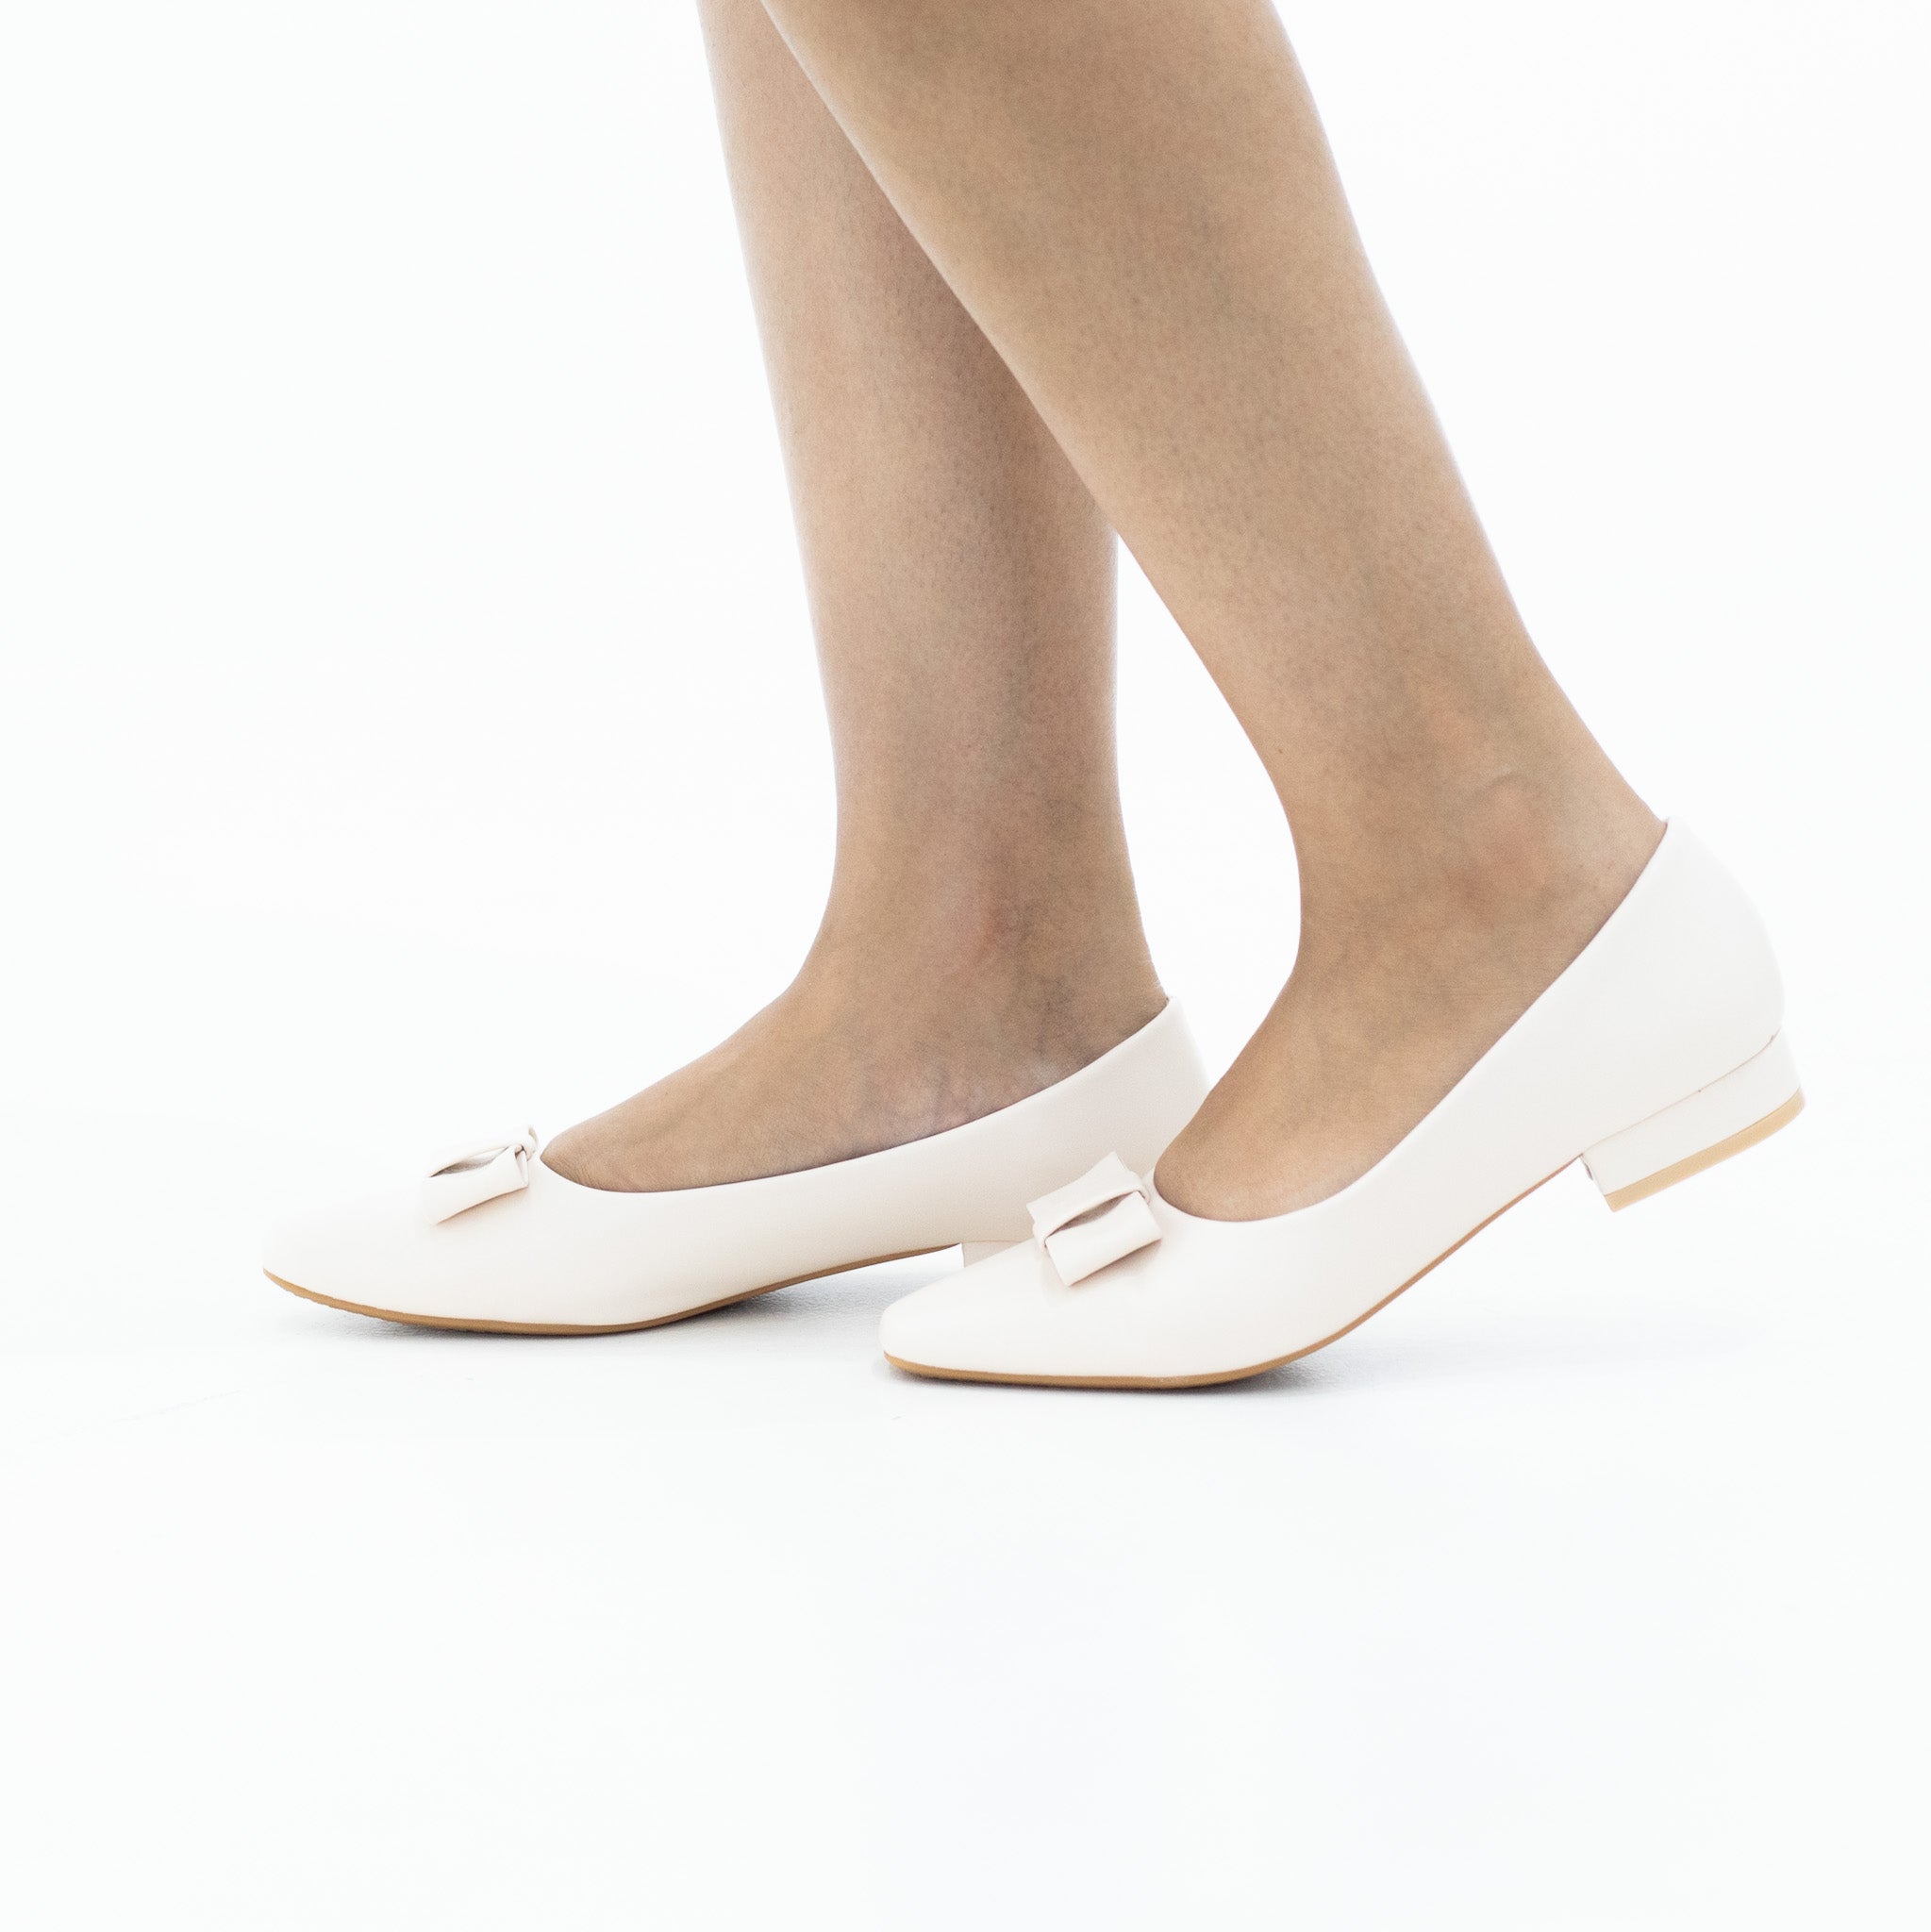 Beige comfort 2cm low heel court shoe with a bow aquarius